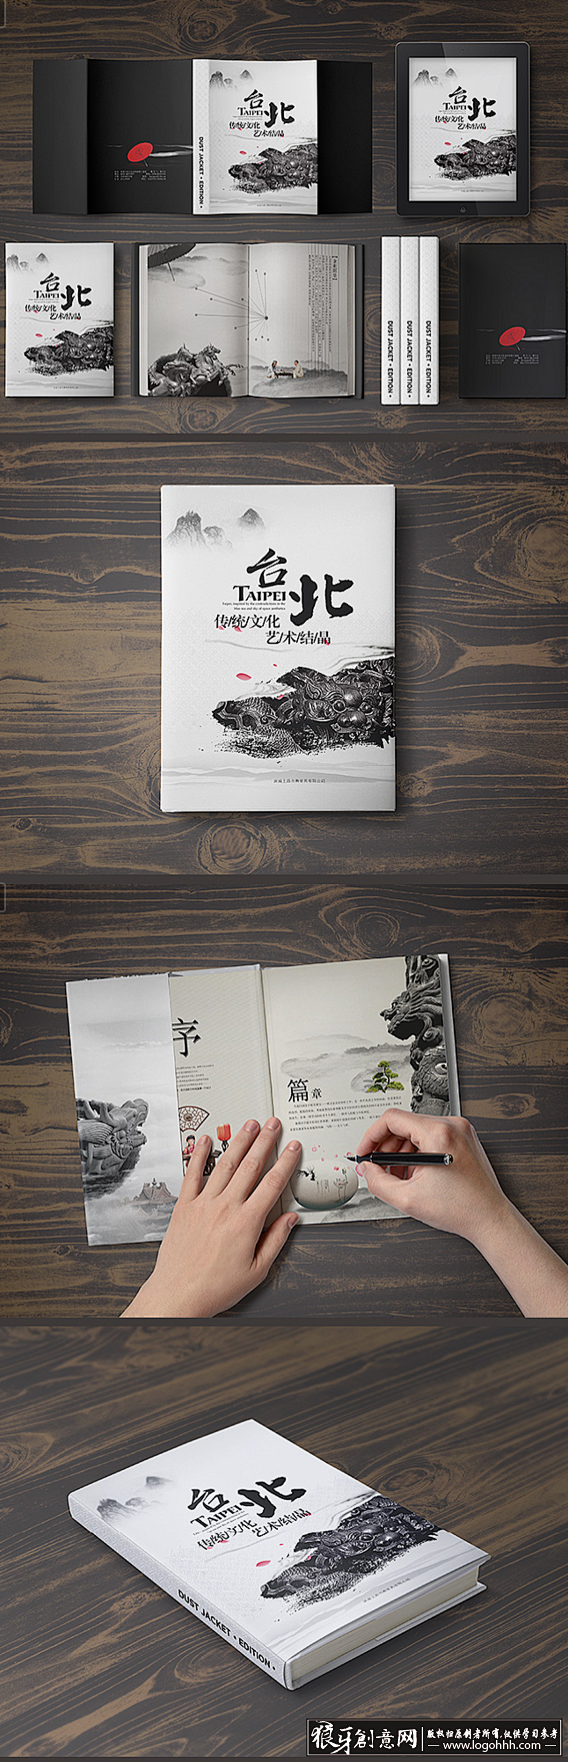 [创意画册] 台北文艺宣传画册 书籍设计...